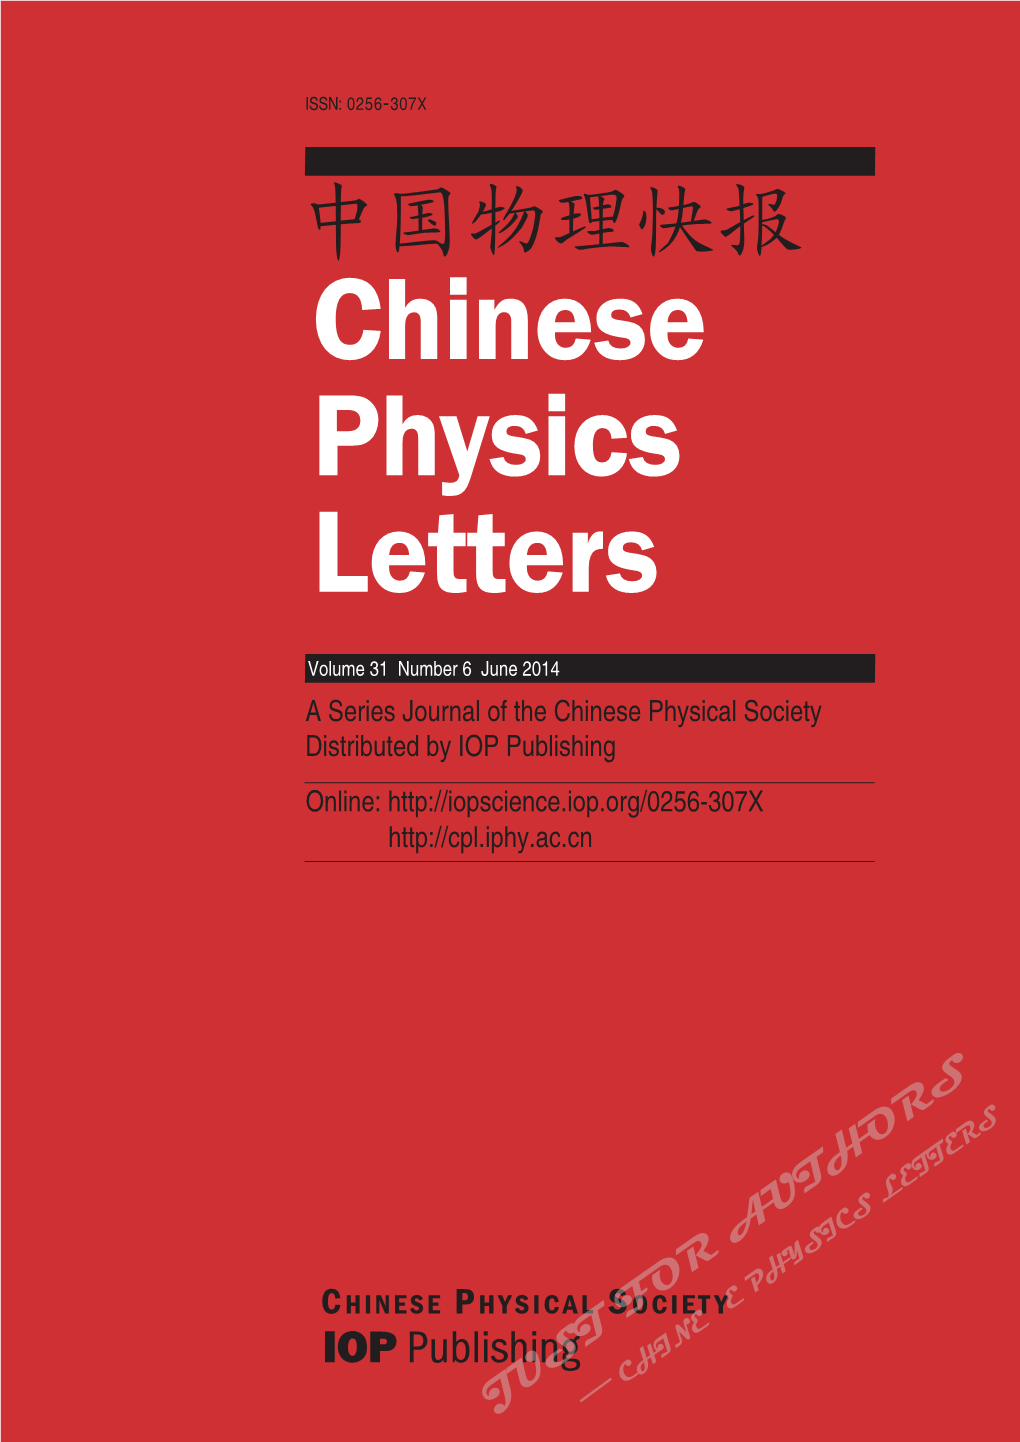 中国物理快报 Chinese Physics Letters